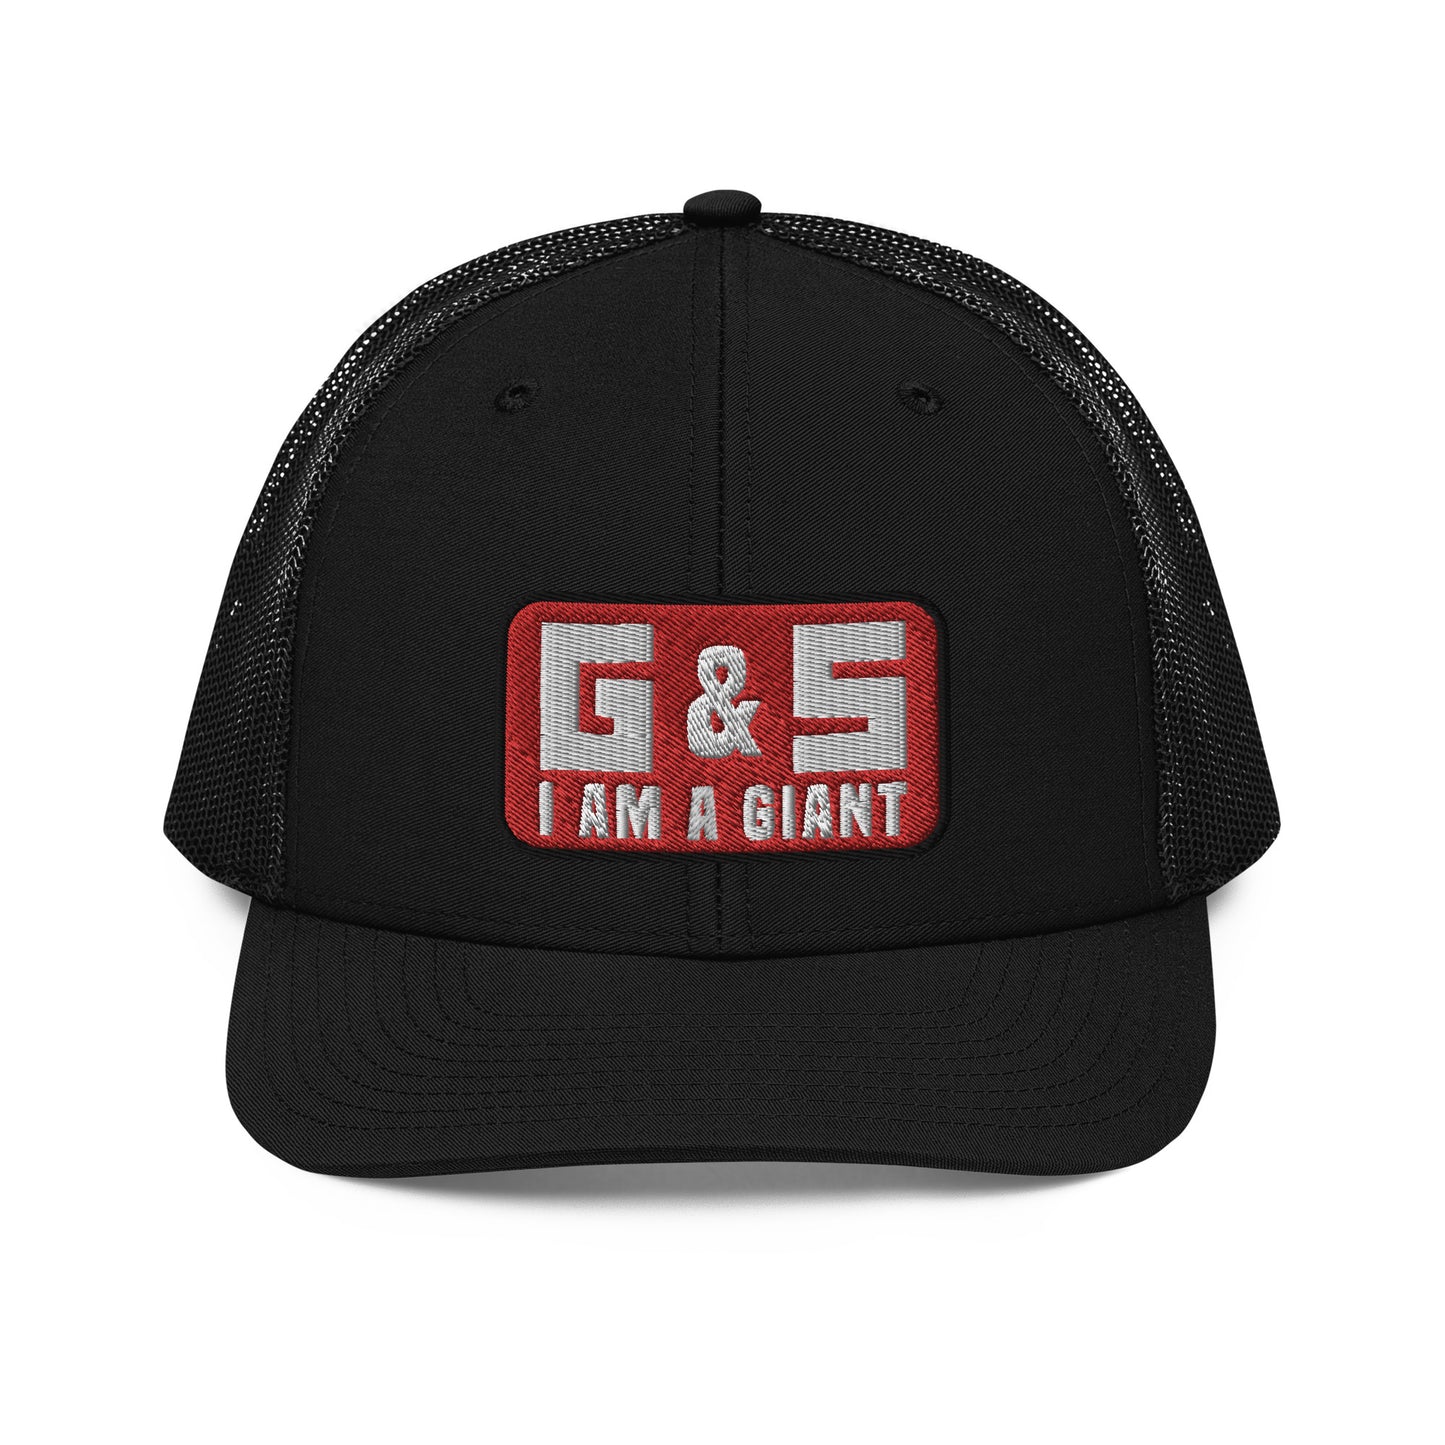 G & S I Am A Giant Trucker Cap